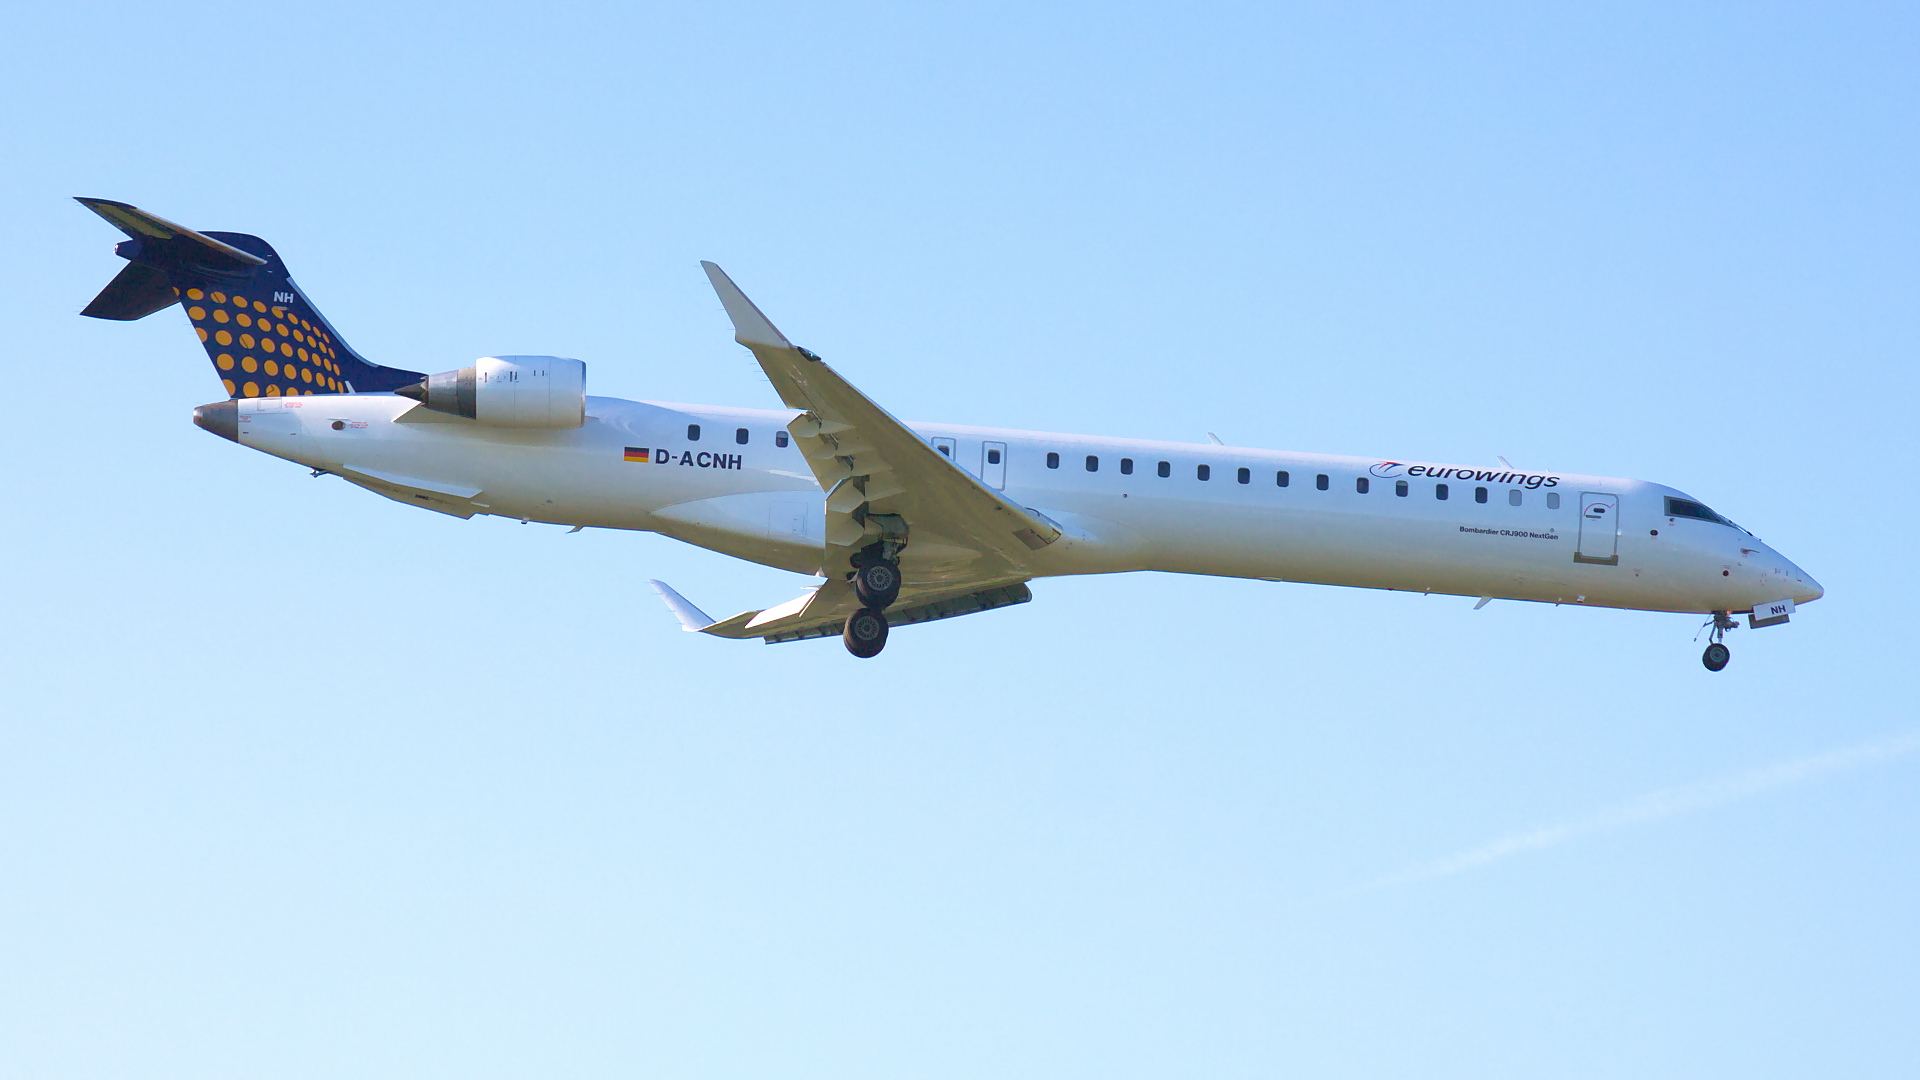 D-ACNH ✈ Eurowings Canadair CL-600-2D24 CRJ-900LR @ London-Heathrow